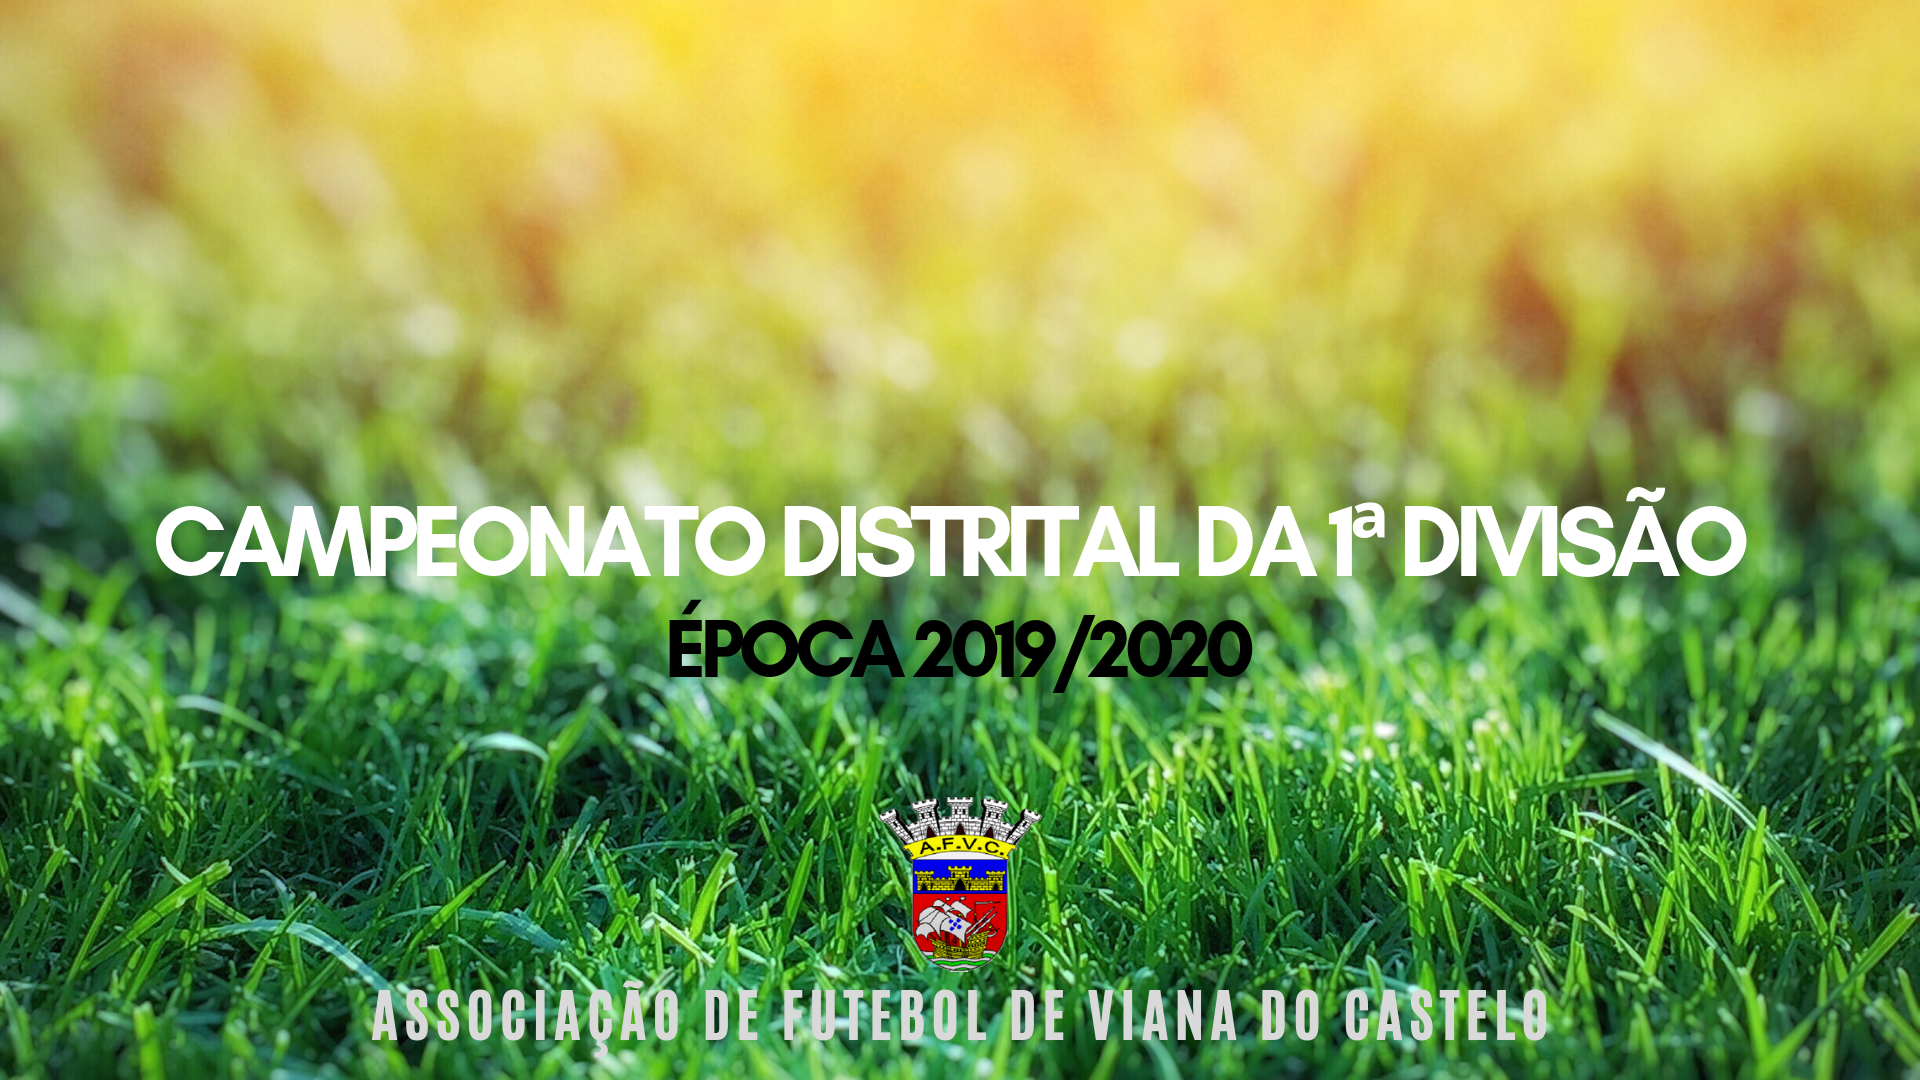 Campeonato Distrital da 1ª Divisão 